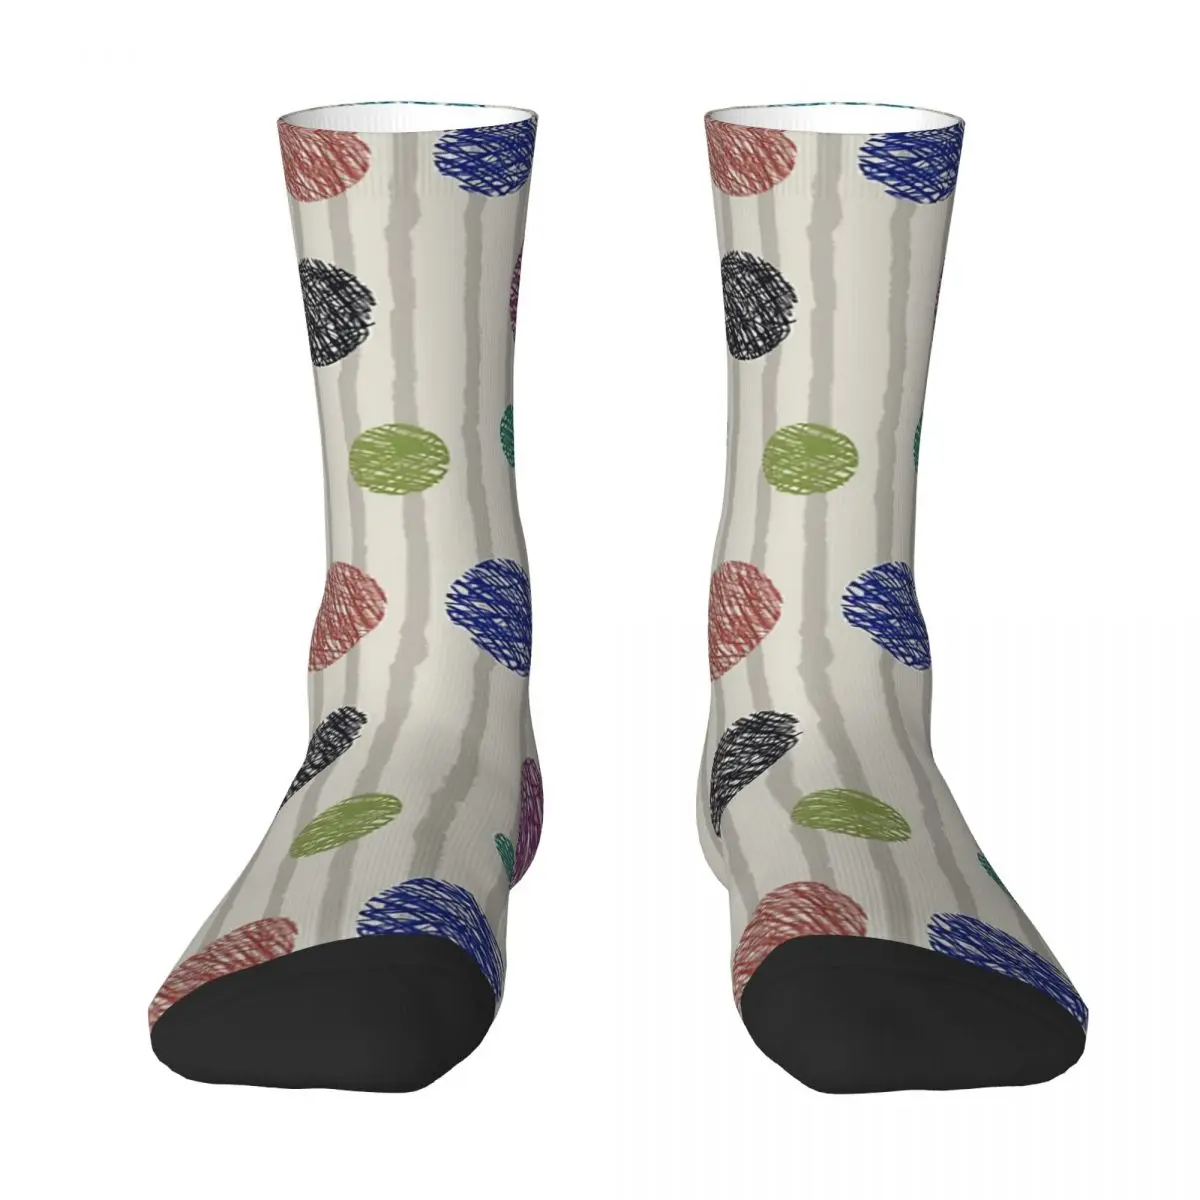 Bubbles And Grey Vertical Stripes Adult Socks,Unisex socks,men Socks women Socks